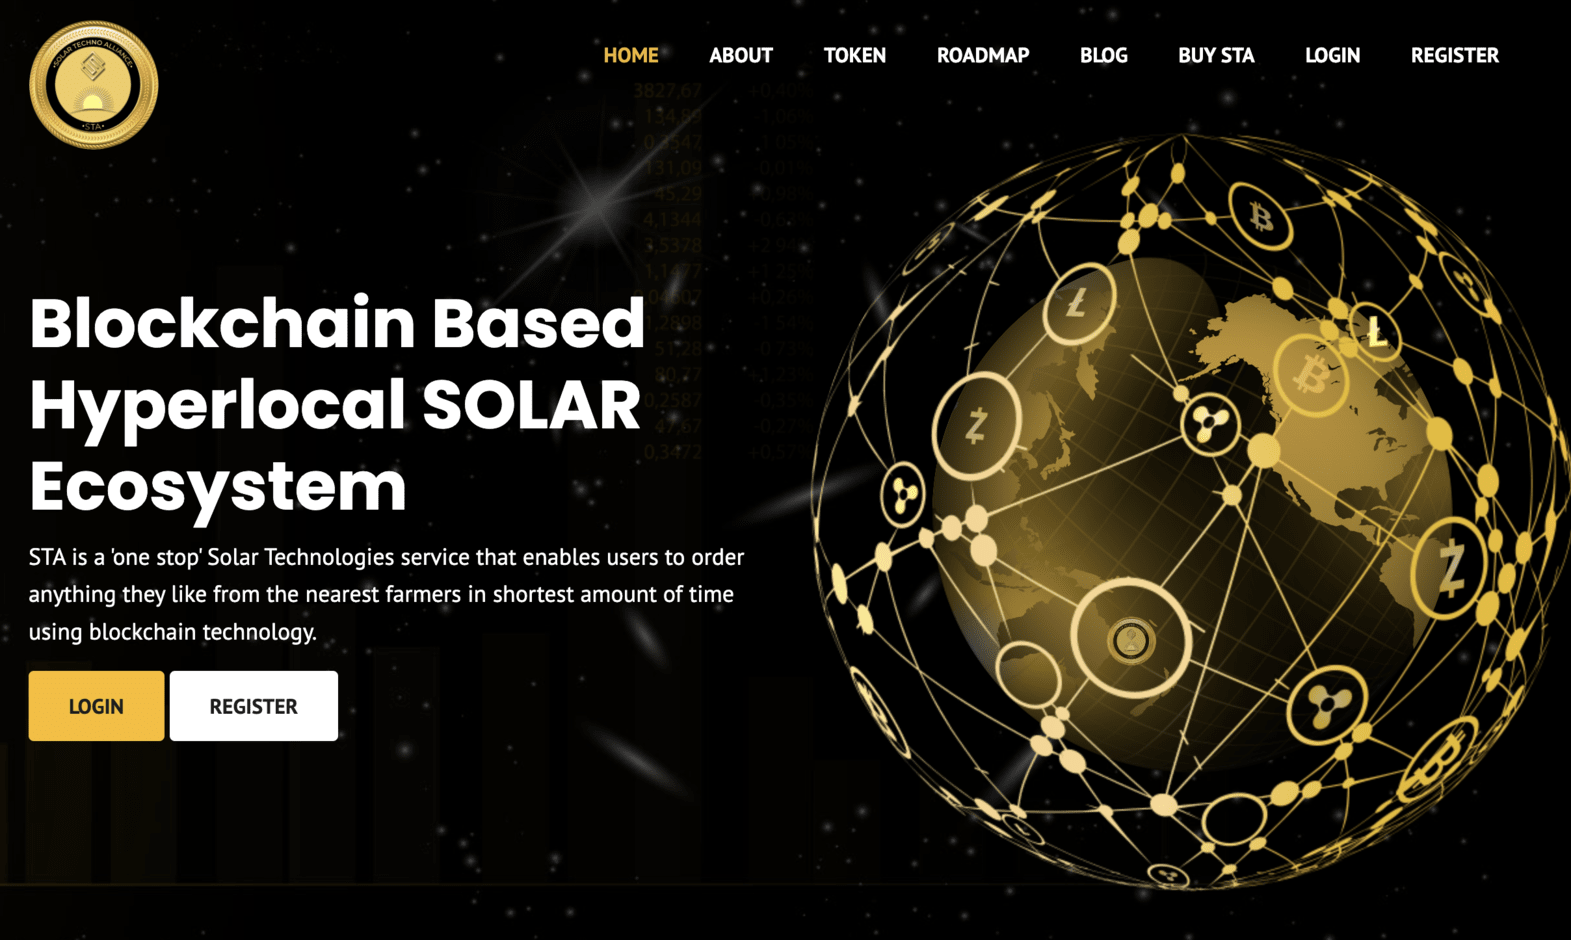 Solar Techno Alliance cover